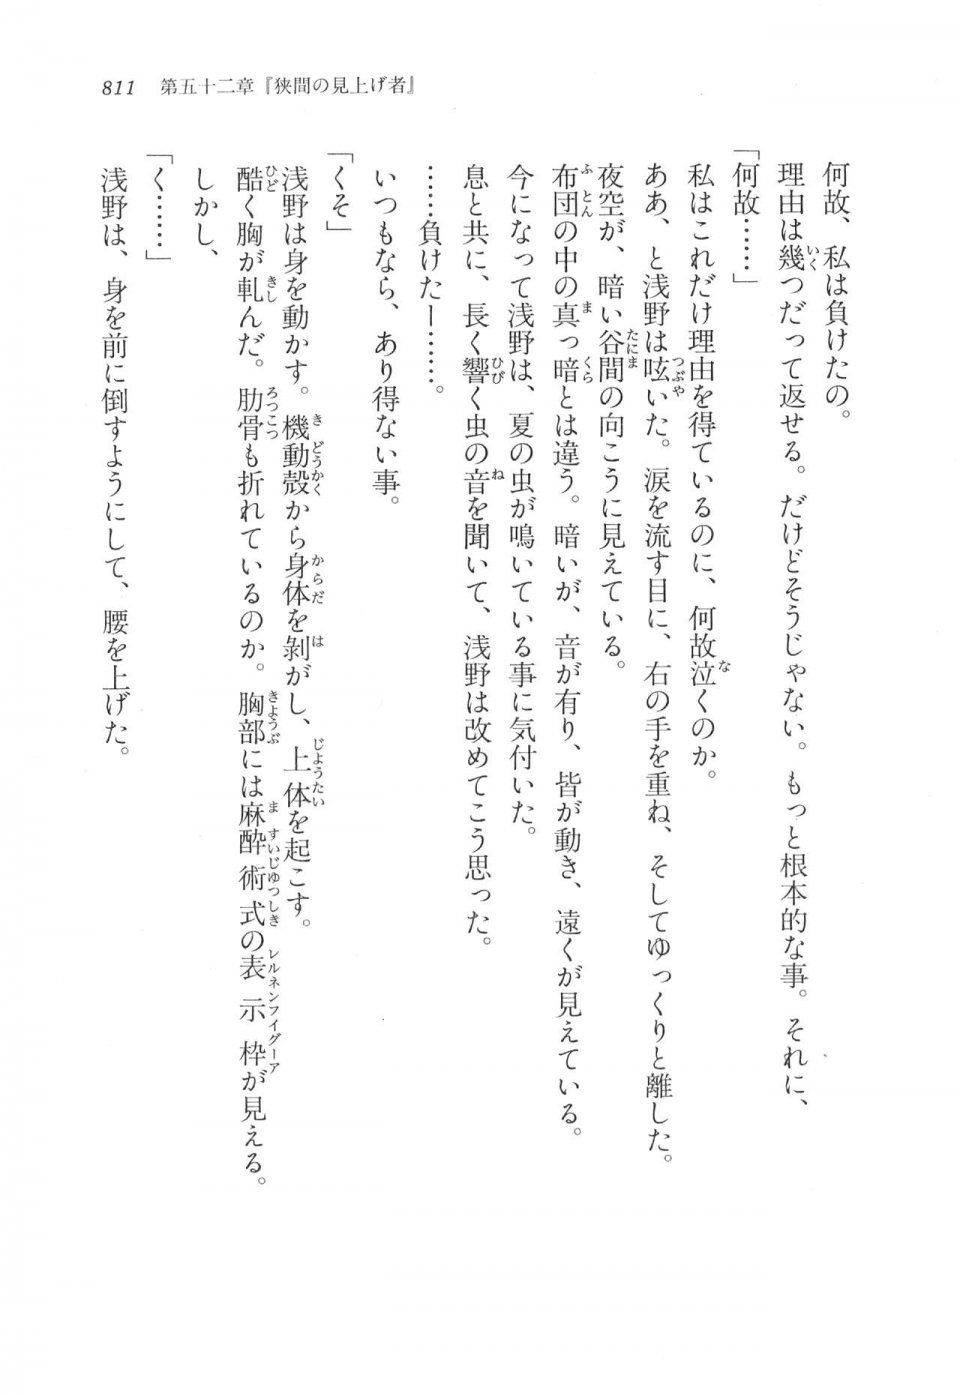 Kyoukai Senjou no Horizon LN Vol 17(7B) - Photo #813